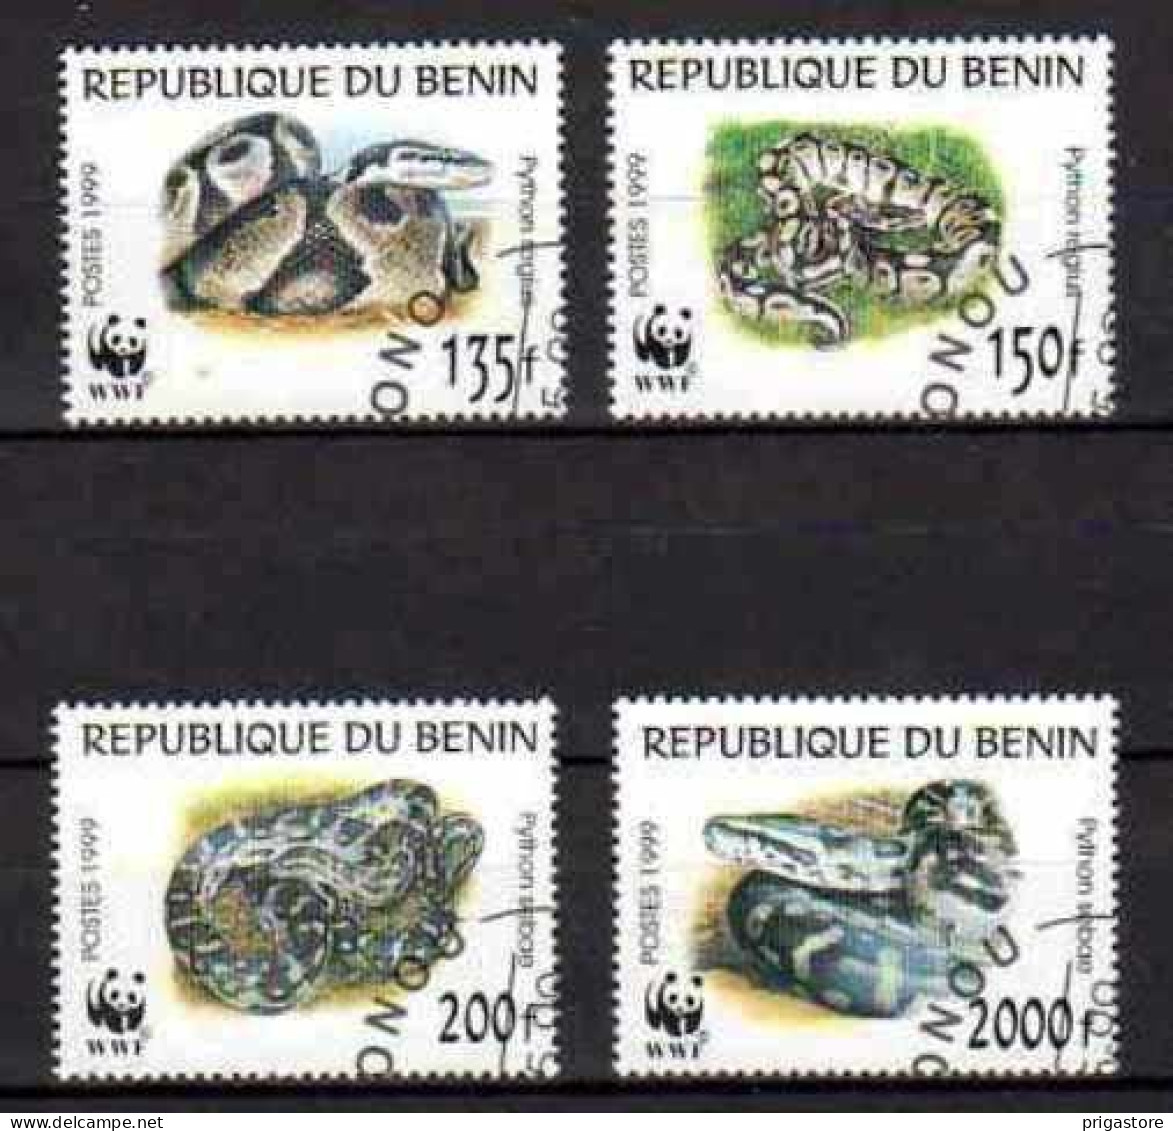 Animaux Serpents Bénin 1999 (40) Yvert N° 898 à 901 Oblitéré Used - Serpientes